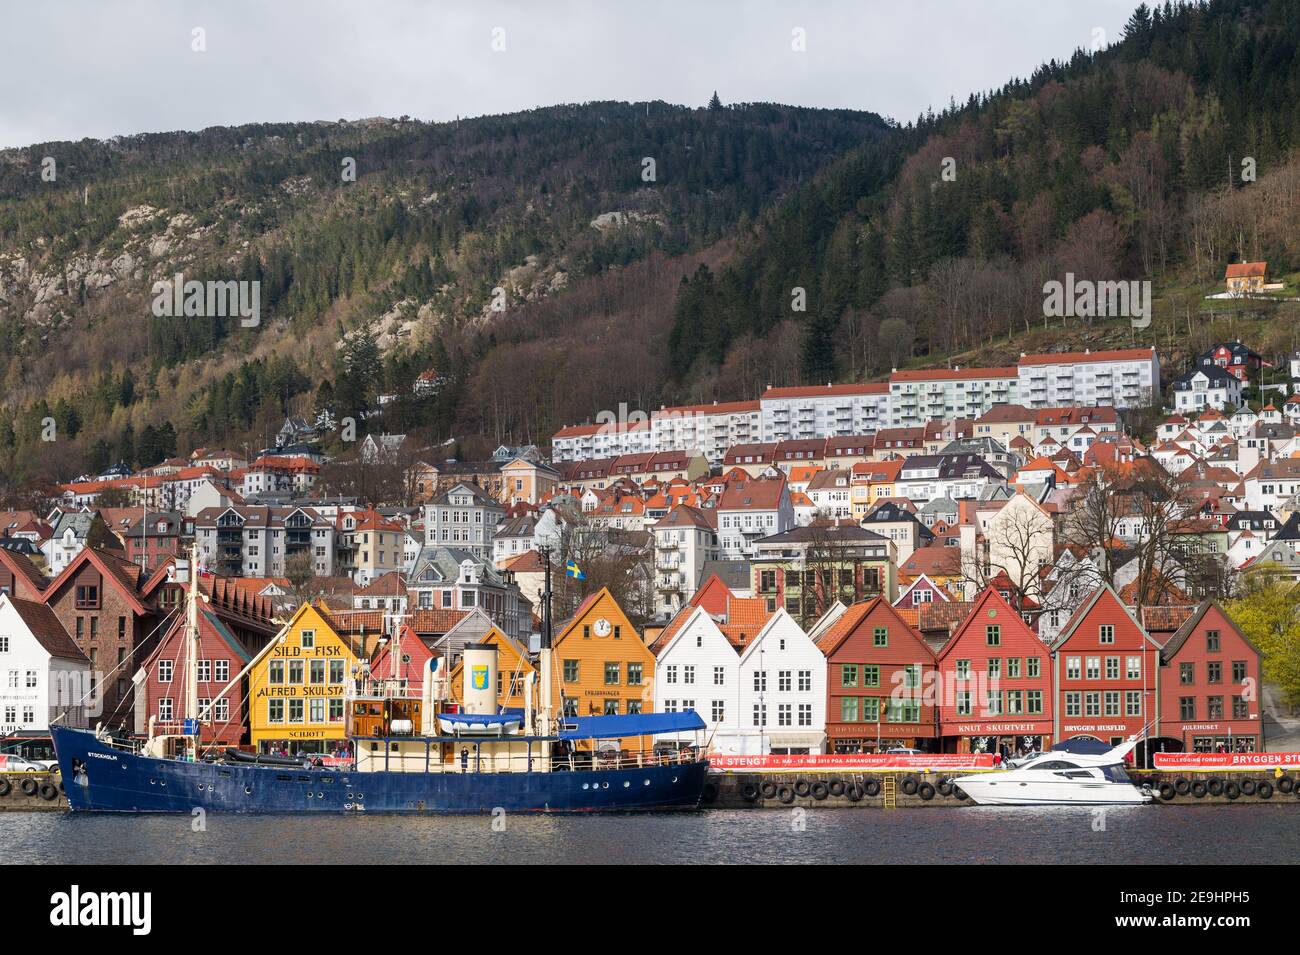 The historic wooden buildings of Bryggen, Bergen, Norway. Stock Photo